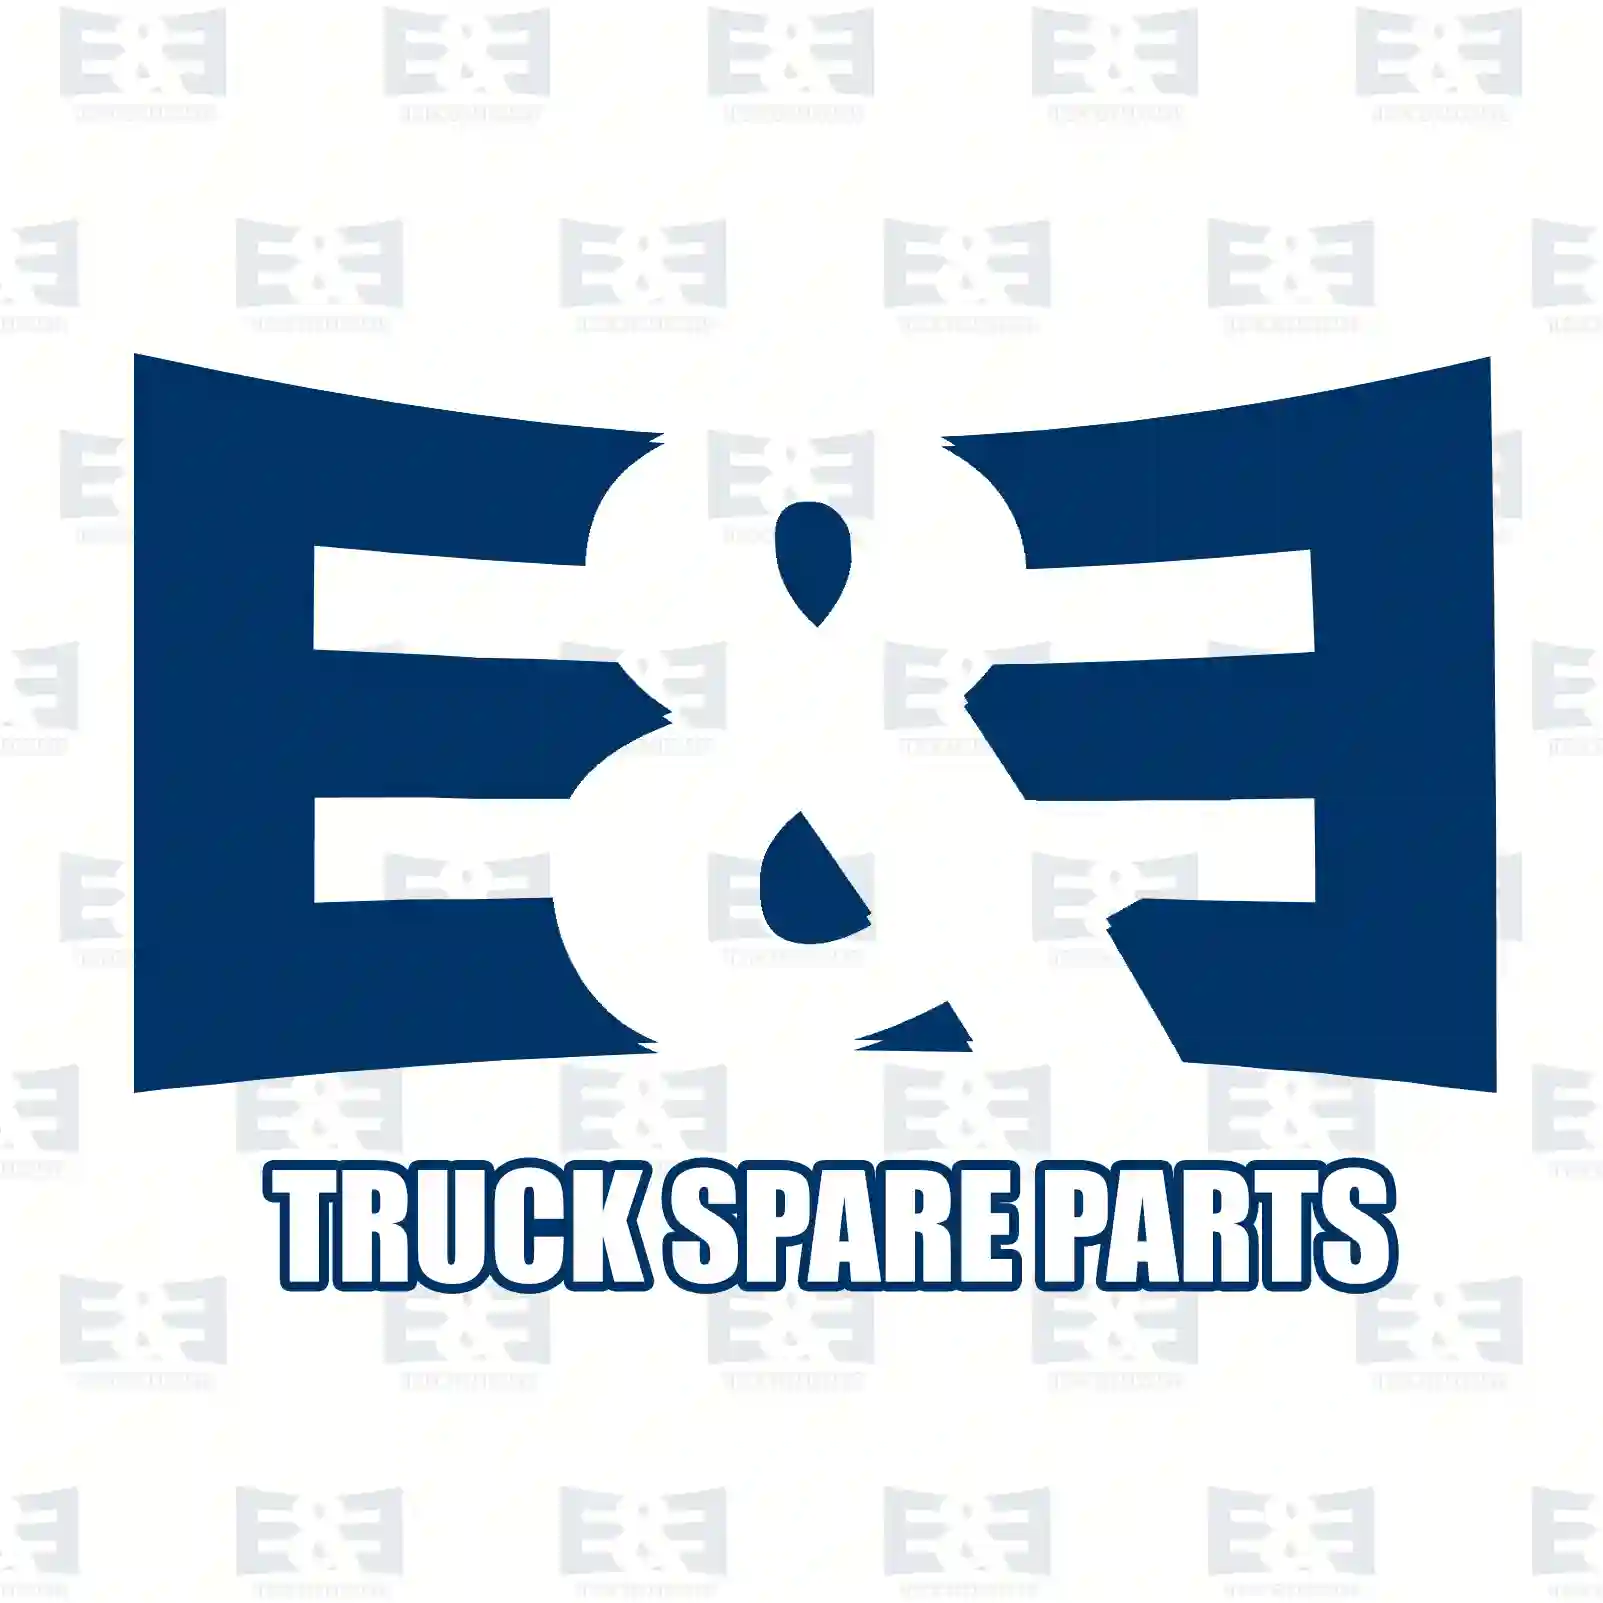 Fan Fan clutch, EE No 2E2201512 ,  oem no:51066300055, 51066300061, 51066300068, 51066309068 E&E Truck Spare Parts | Truck Spare Parts, Auotomotive Spare Parts